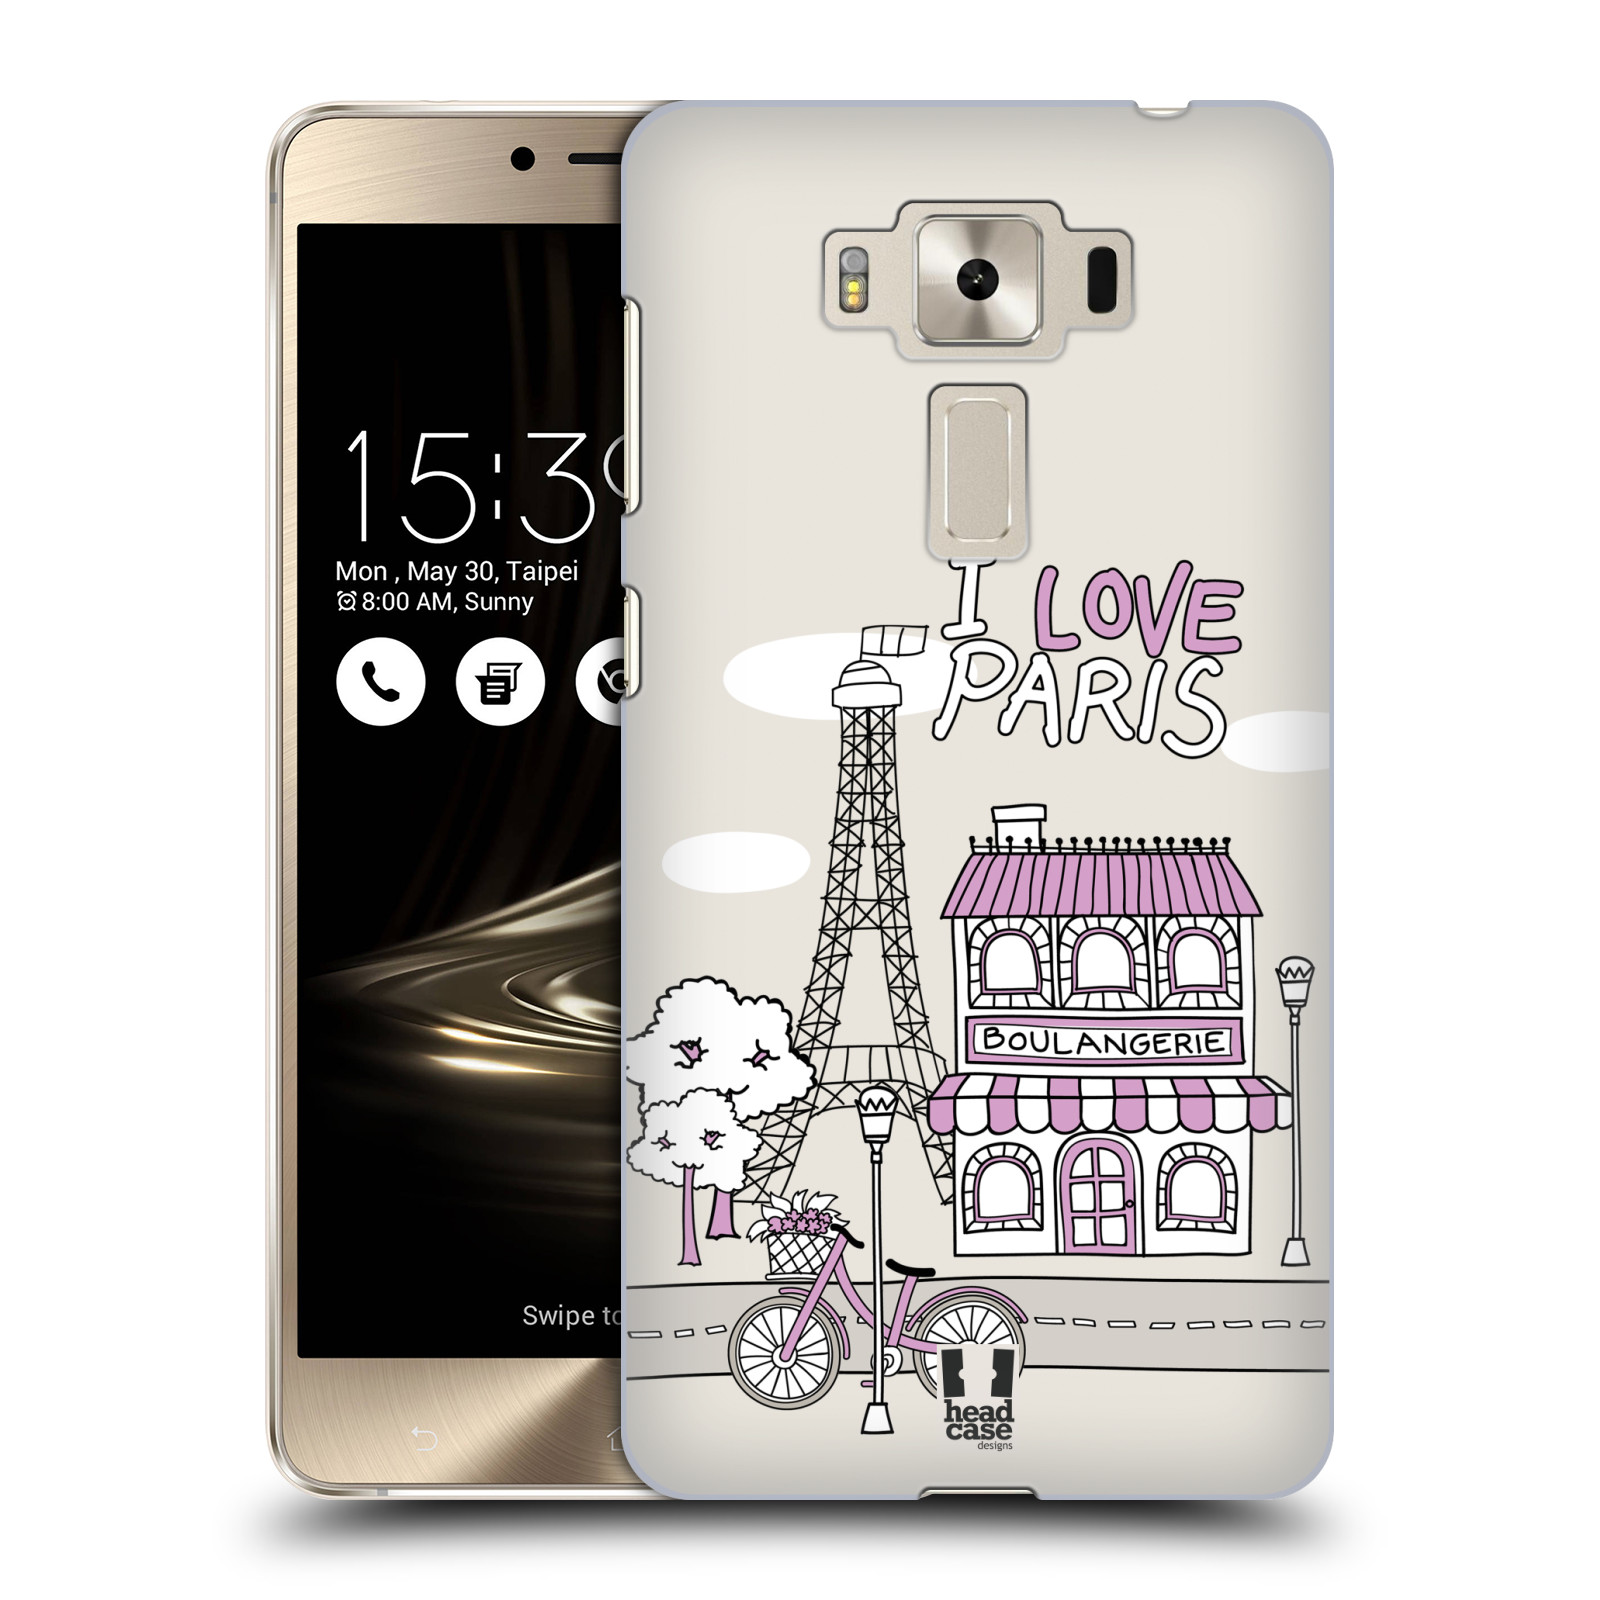 HEAD CASE plastový obal na mobil Asus Zenfone 3 DELUXE ZS550KL vzor Kreslená městečka FIALOVÁ, Paříž, Francie, I LOVE PARIS